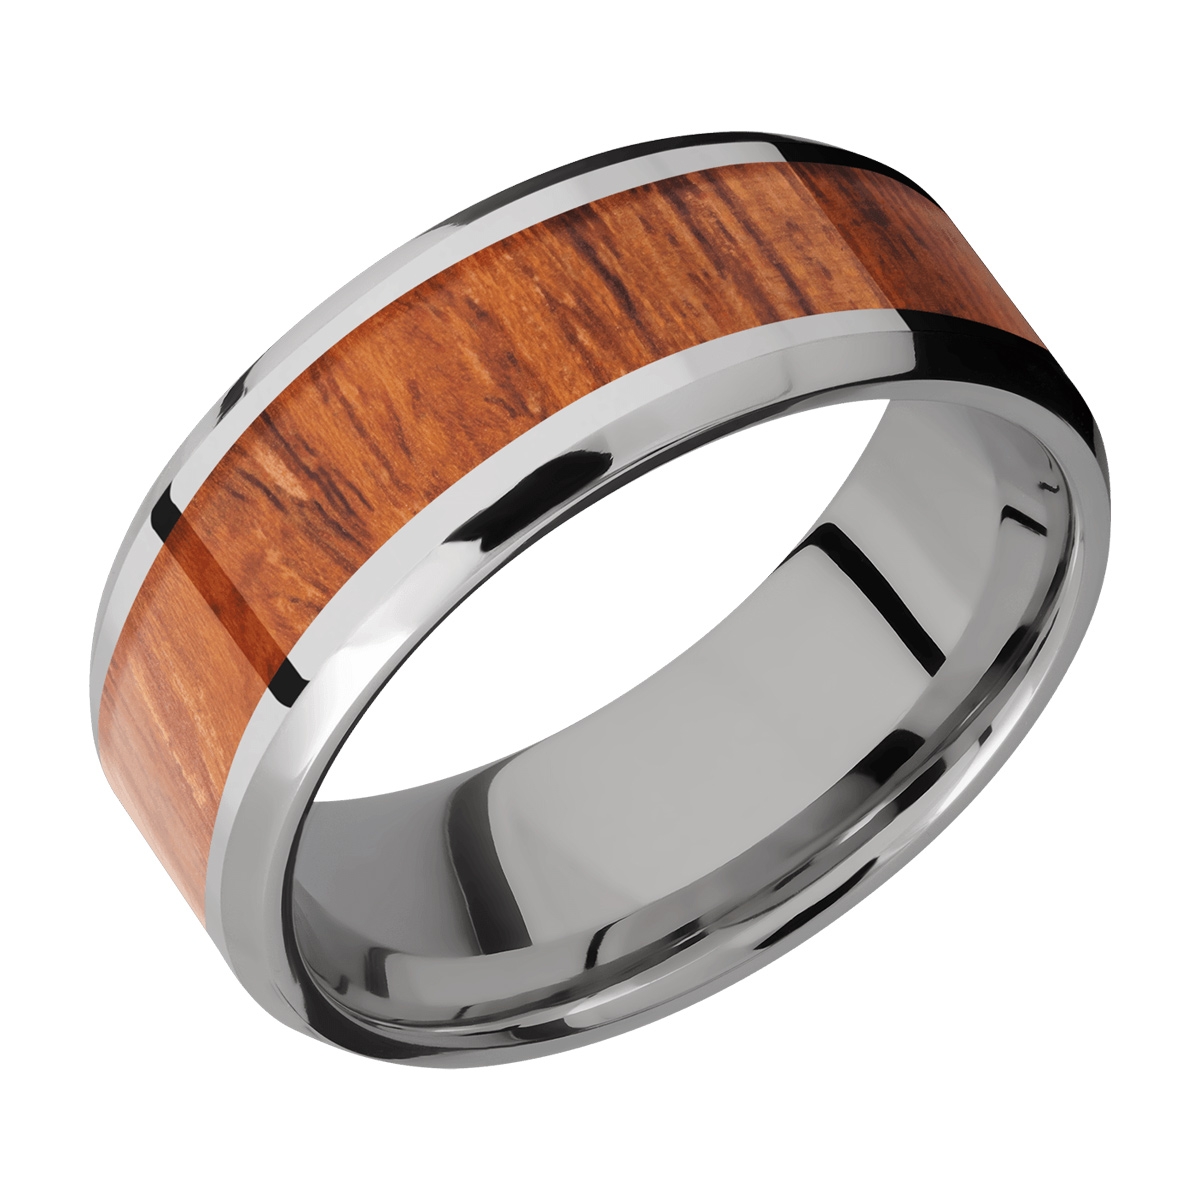 Lashbrook 8B15(NS)/HARDWOOD Titanium Wedding Ring or Band